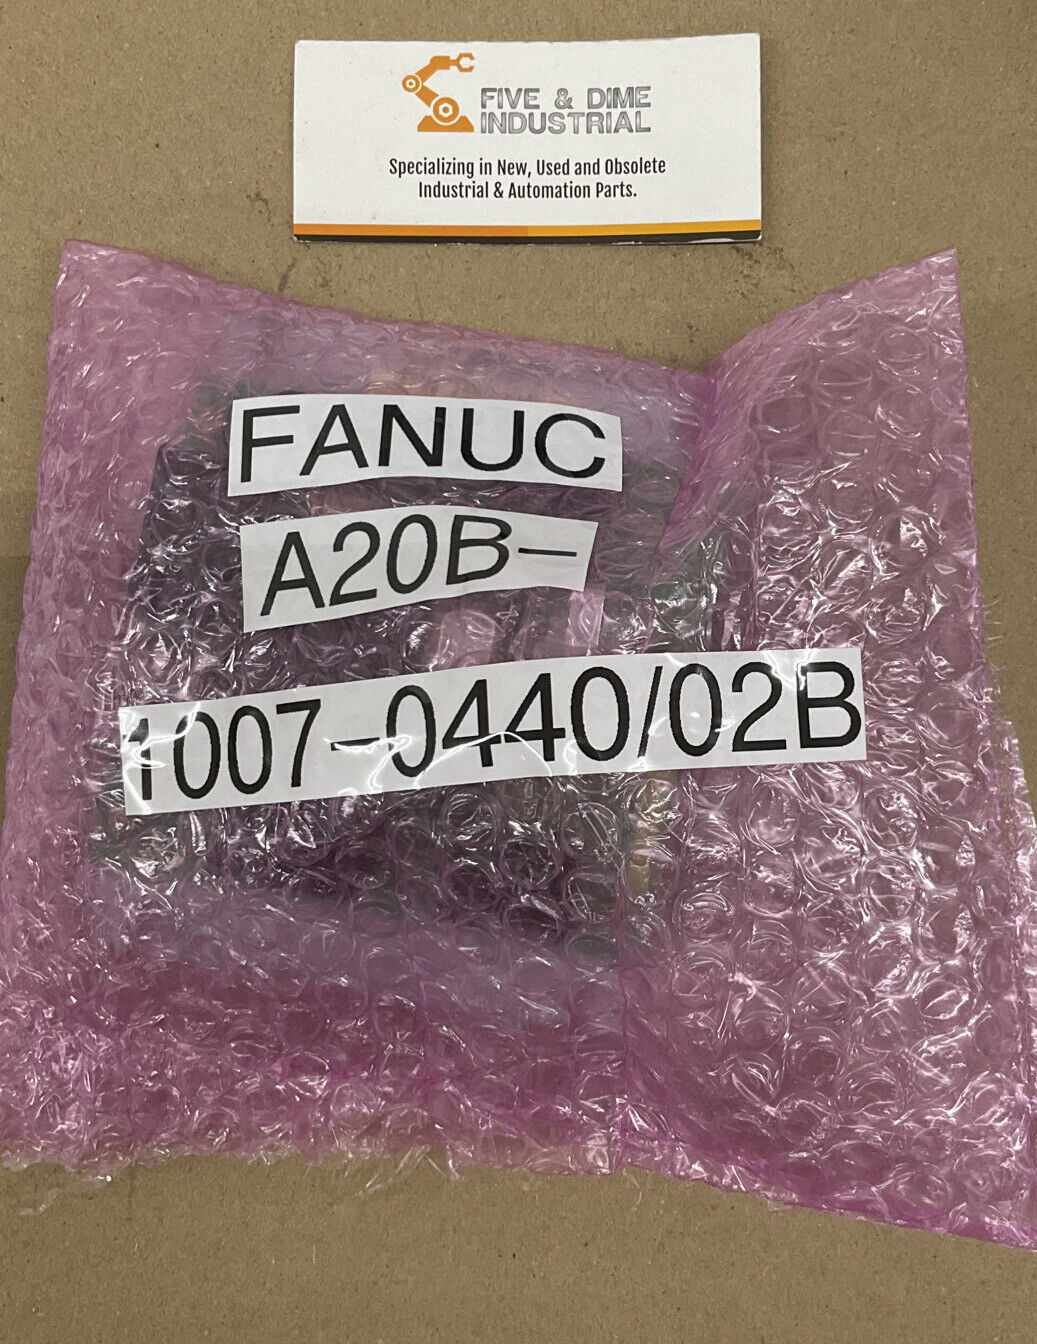 Fanuc MODEL A20B-1007-0440/02B E STOP CONTROL BOARD (CB106)